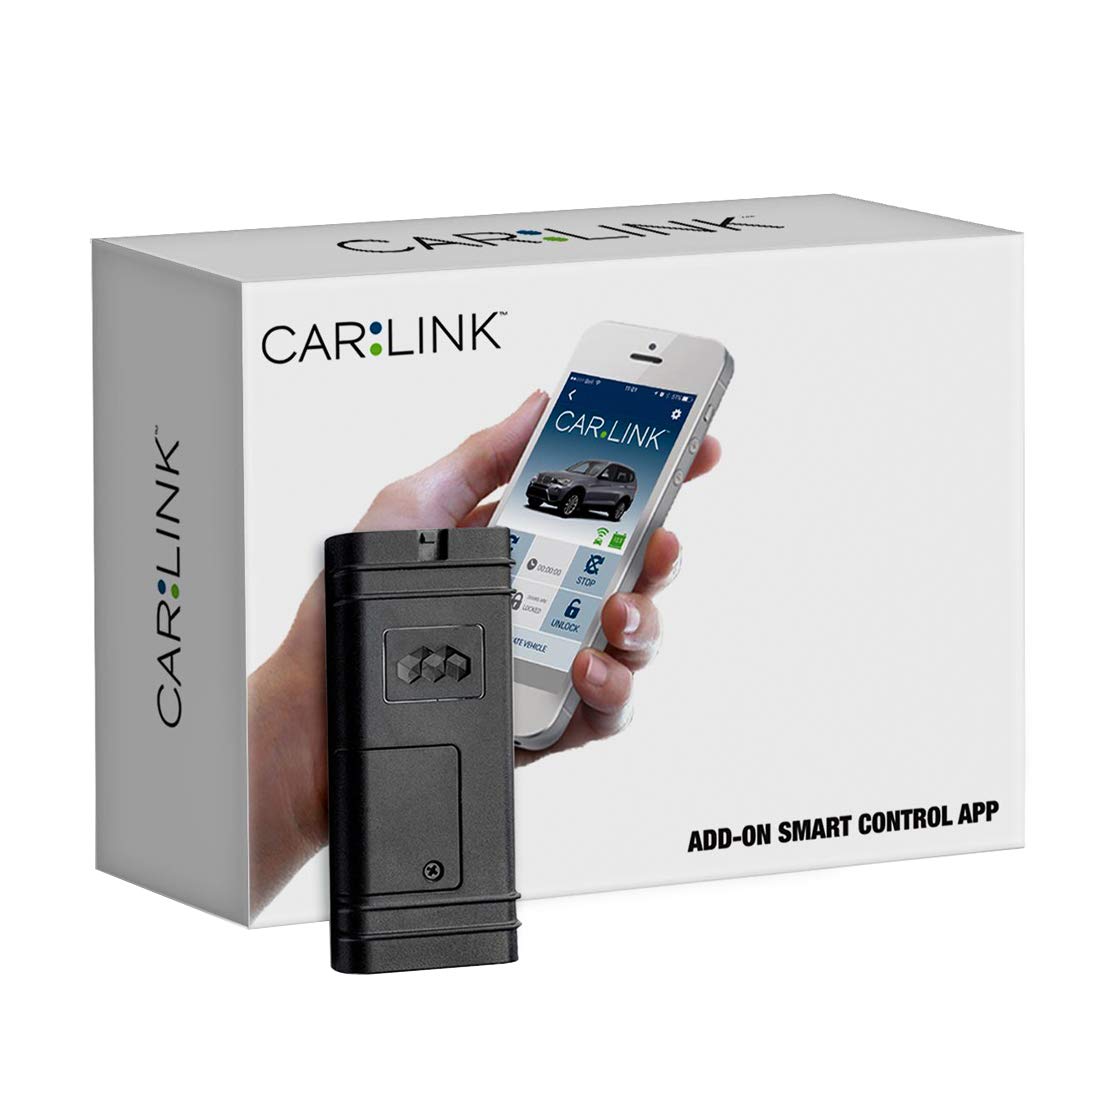 CARLINK Moduł interfejsu komórkowego ASCL6 Remote Start umożliwia uruchomienie samochodu za pomocą telefonu. Obejmuje to 1 rok